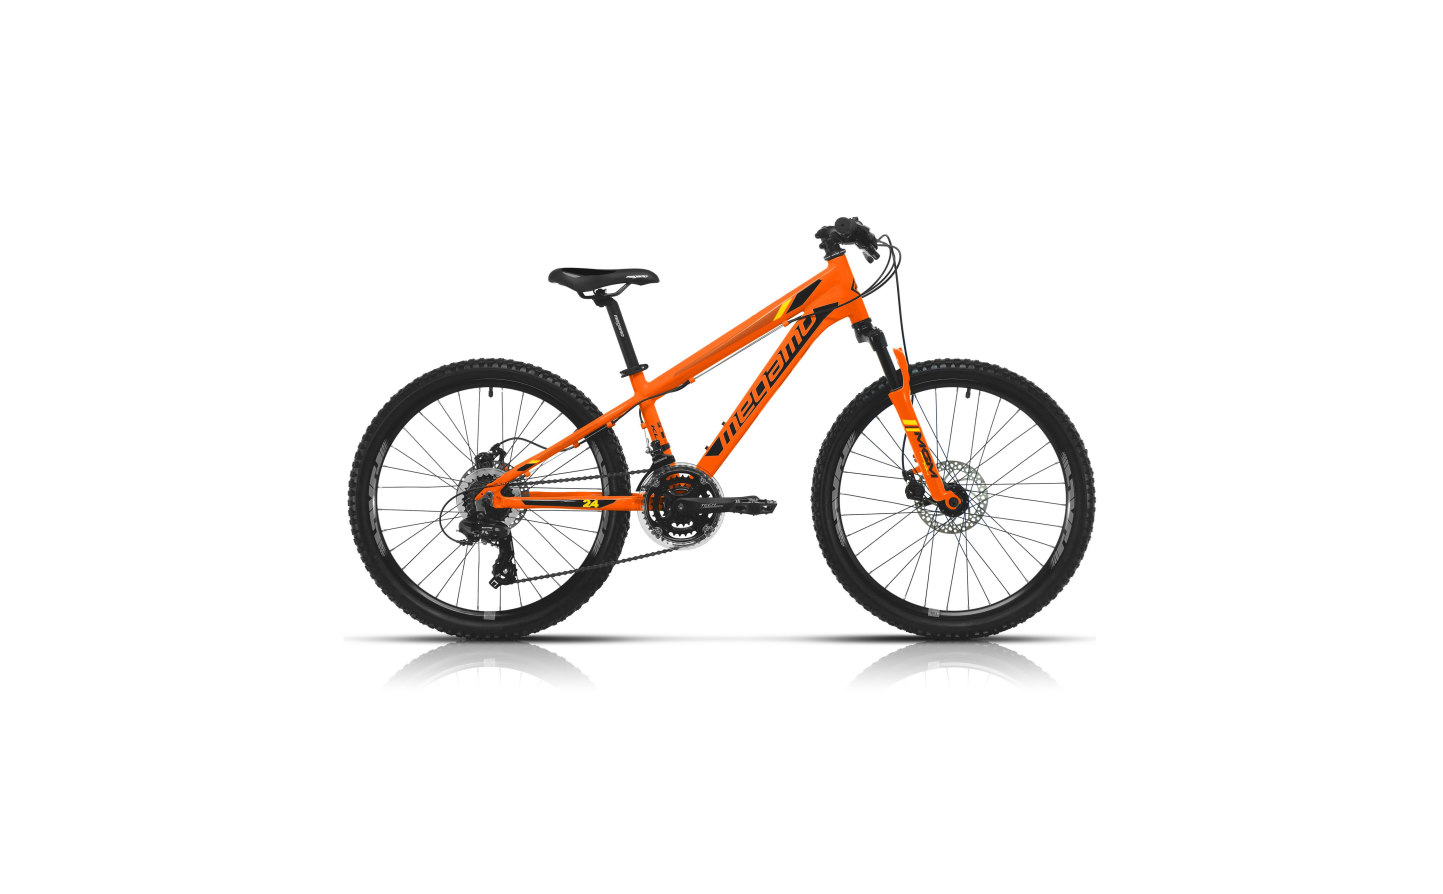 Bicicleta Megamo 24 KU4 Disc 2022 ¡La infantil más completa! ❤️